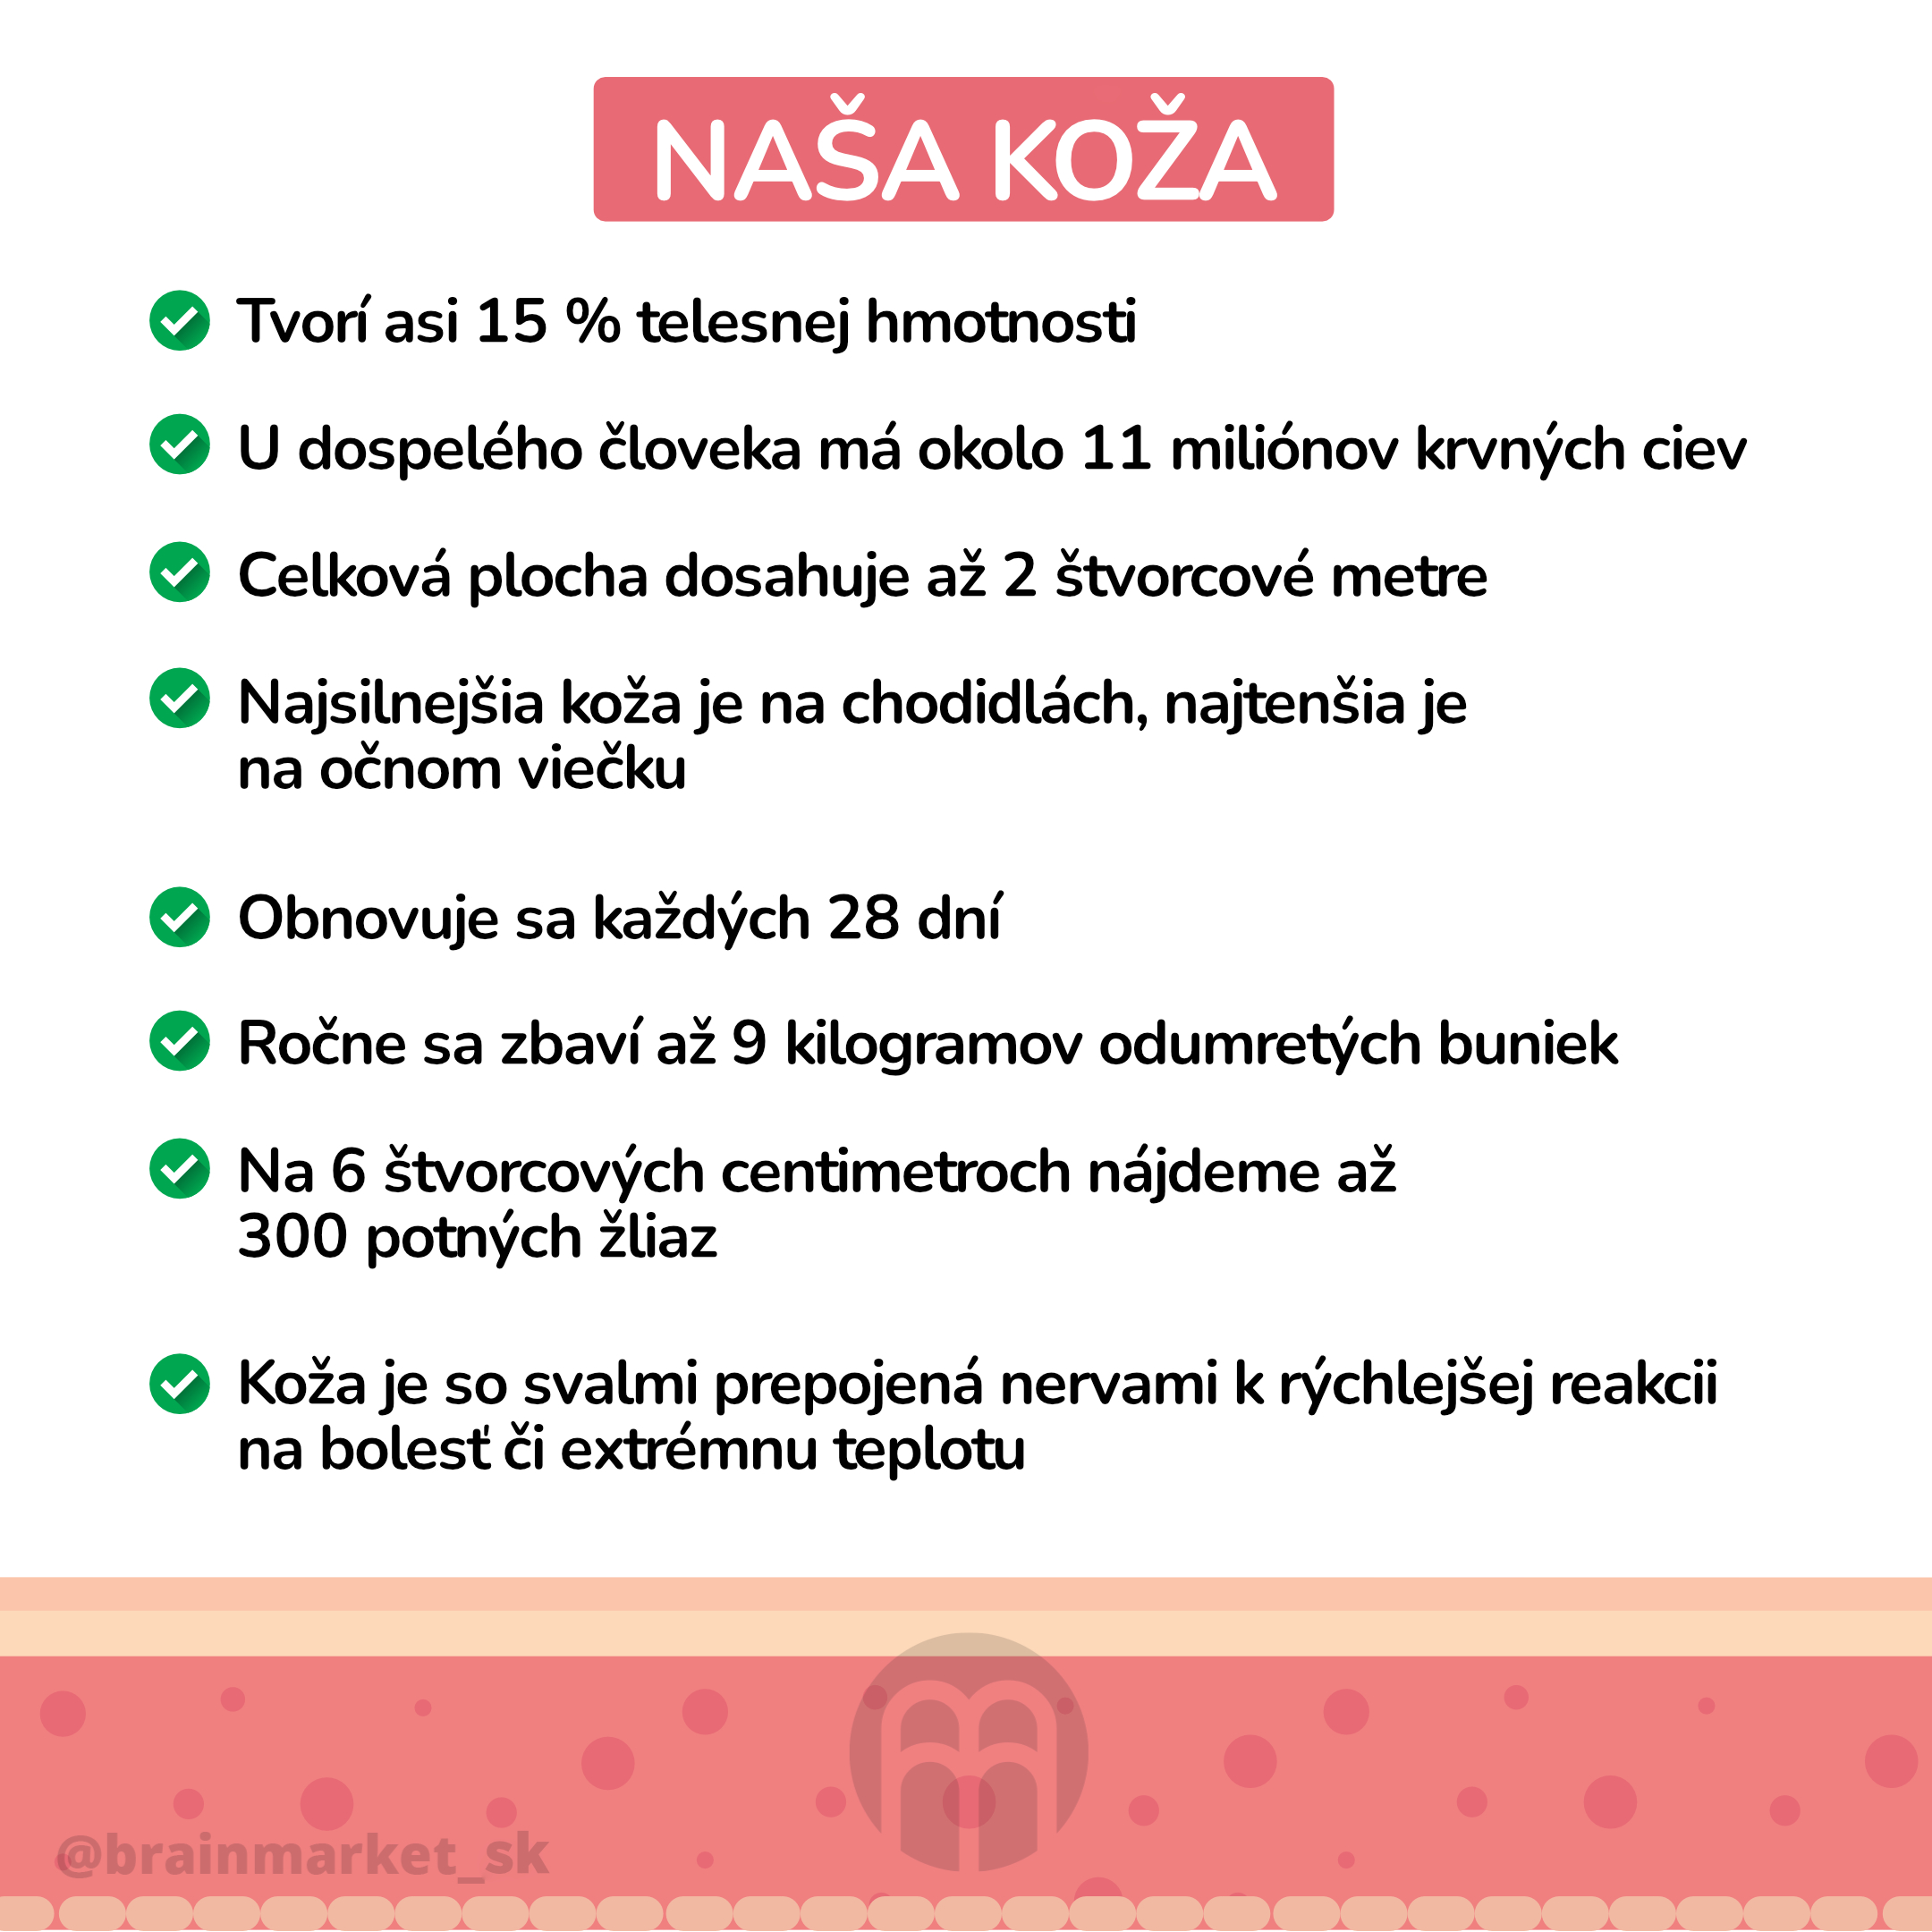 nase kuze_infografika_cz